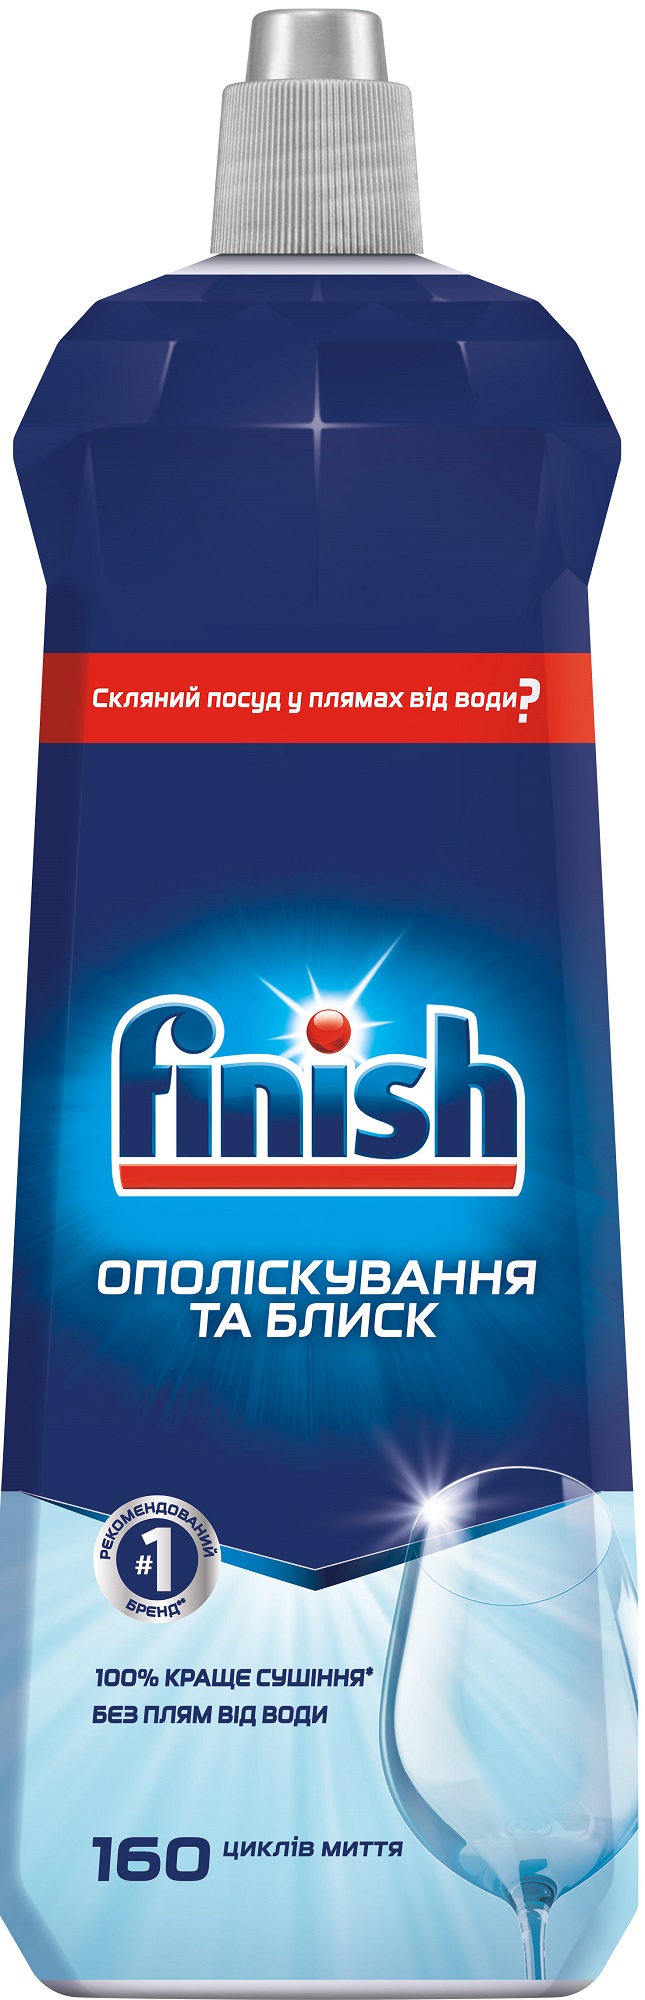 Ополаскиватель для посудомоечной машины FINISH Rinse Aid 800мл в Киеве